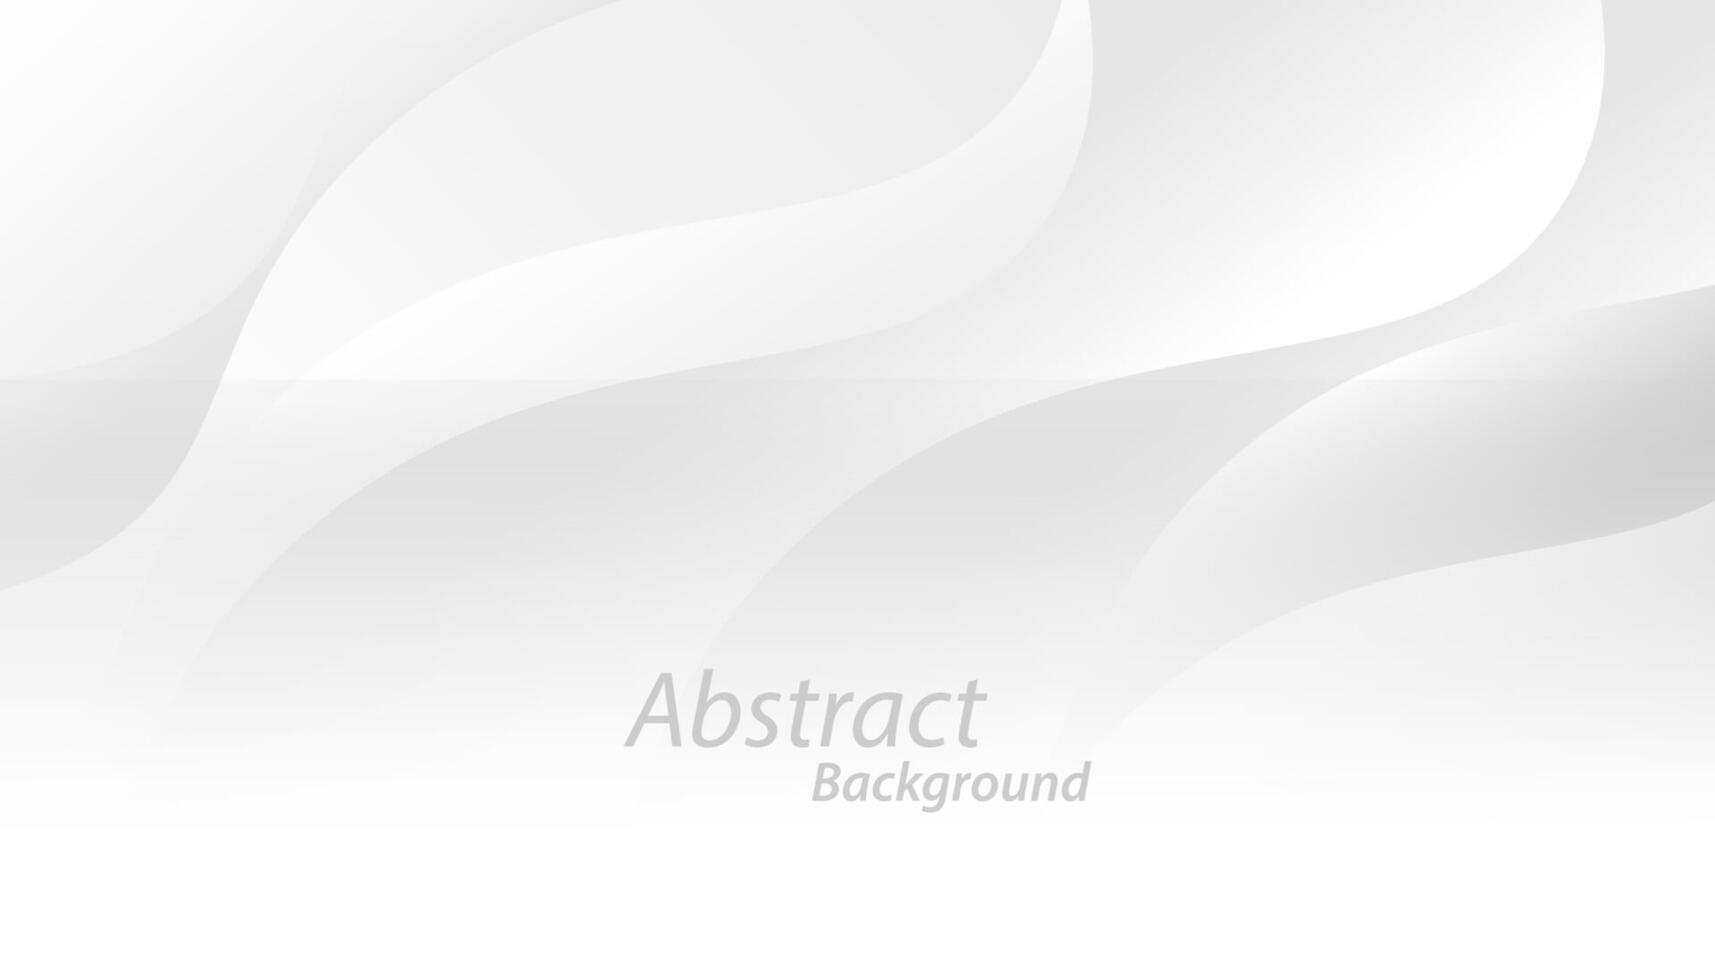 abstrakt elegant Weiß und grau Hintergrund Design. Vektor Illustration Design zum Präsentation, Banner, Abdeckung, Netz, Karte, Poster, Hintergrund